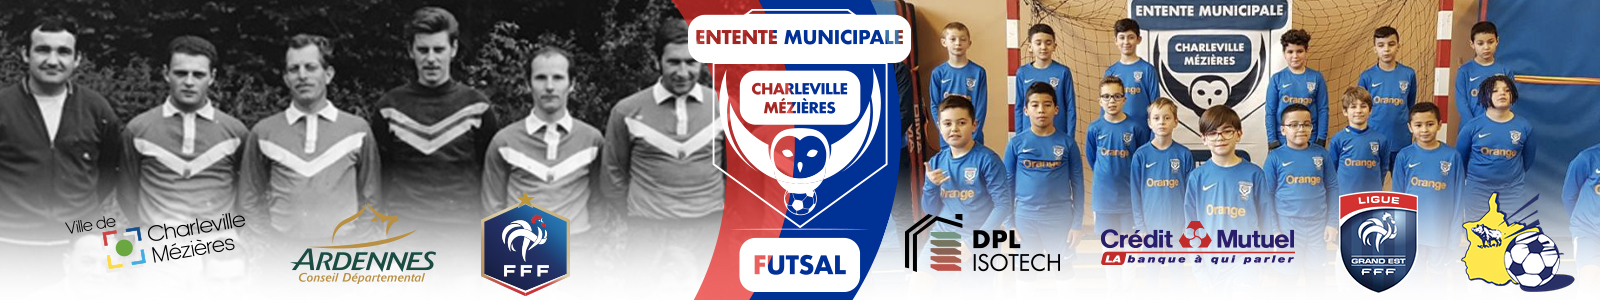 ENTENTE MUNICIPALE DE CHARLEVILLE MEZIERES : site officiel du club de foot de CHARLEVILLE MEZIERES - footeo